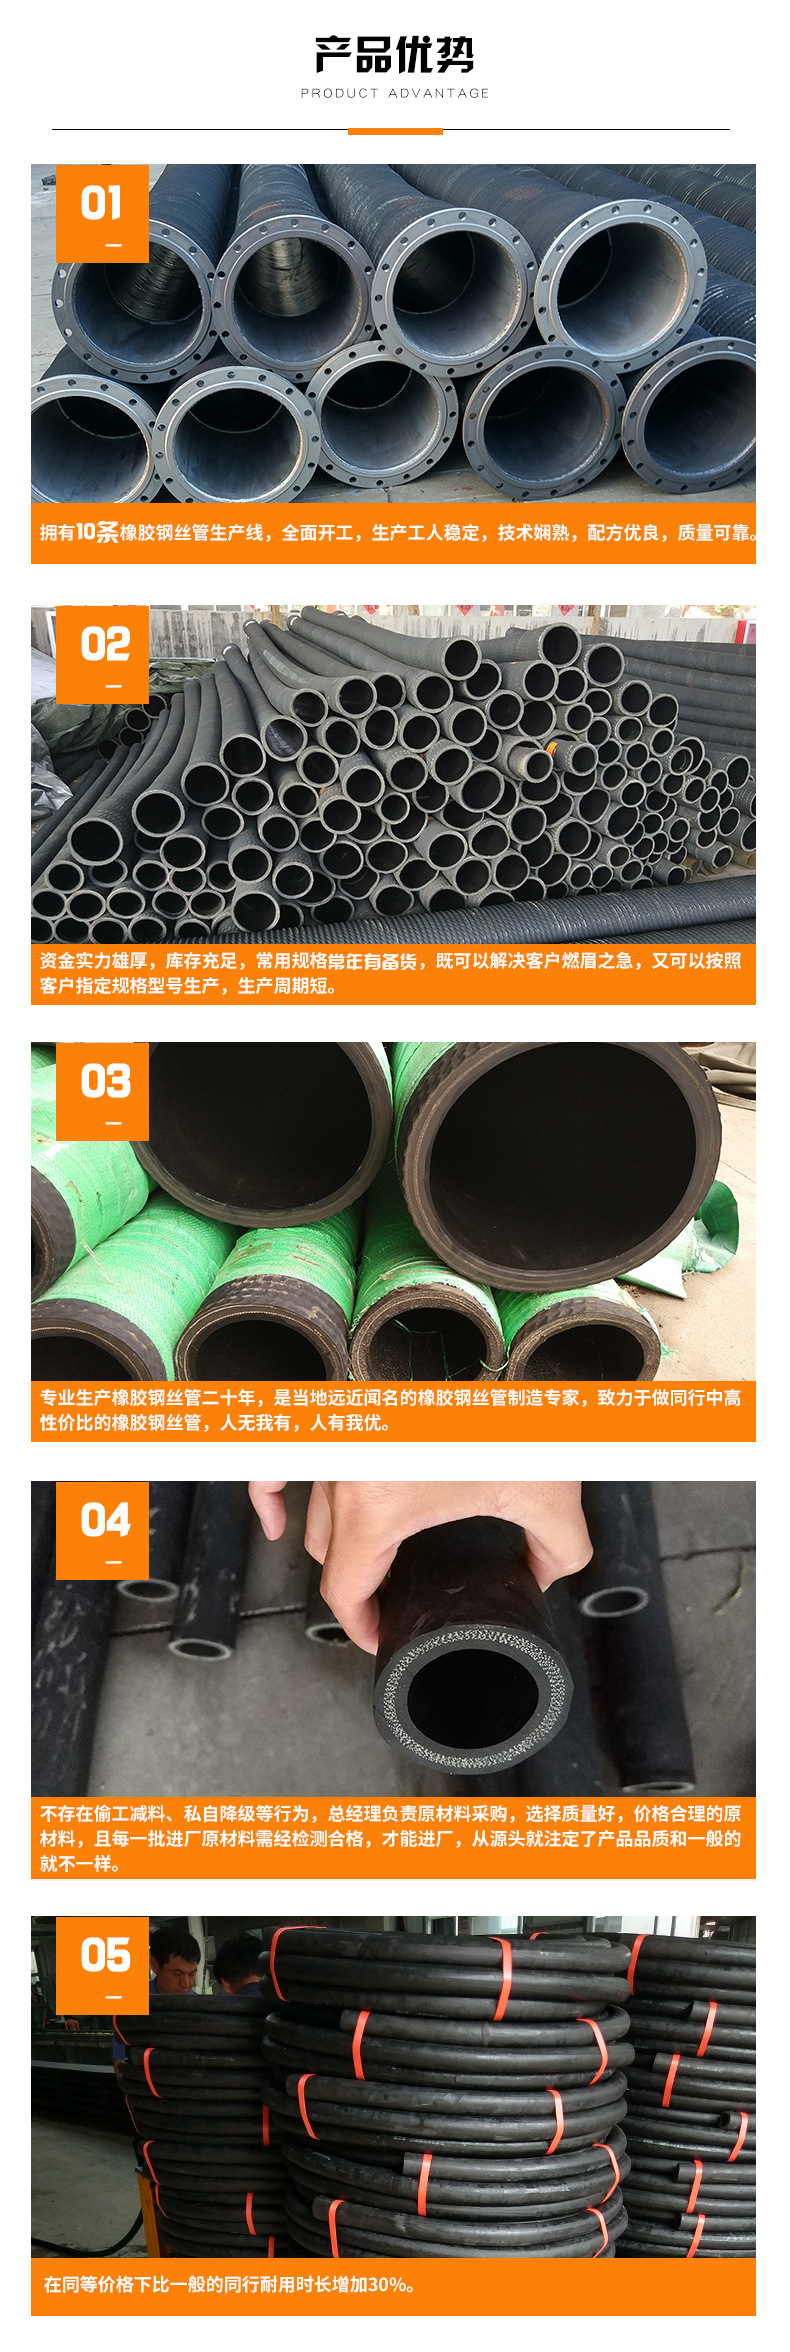 钢丝缠绕胶管 黑色 吸排水、沙、泥浆专用示例图5